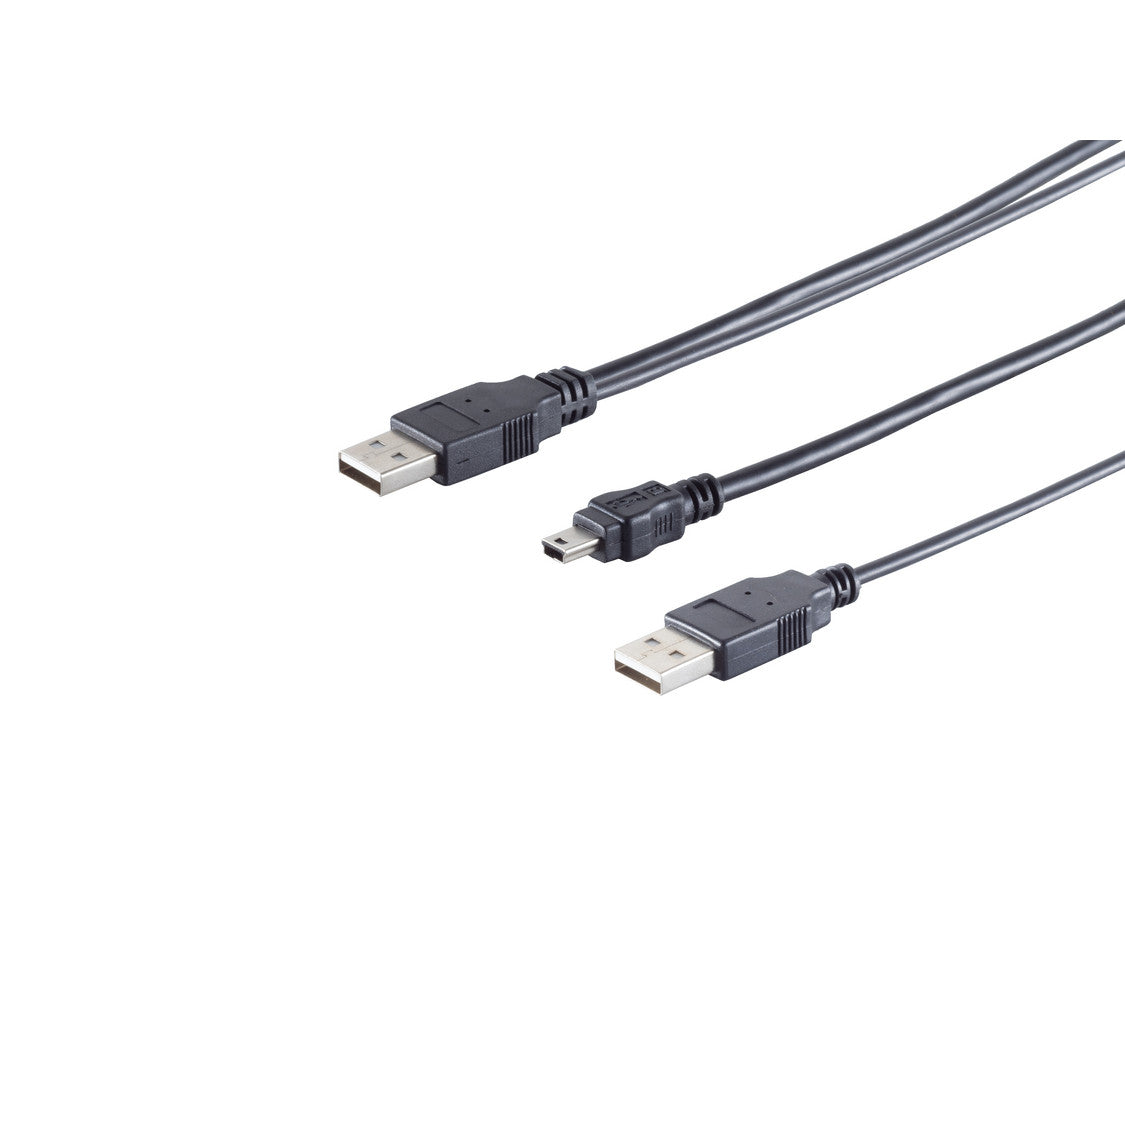 USB-Y-Stromkabel, 2 x USB A-Stecker auf USB-B-Mini 5 pin Stecker, USB 2.0